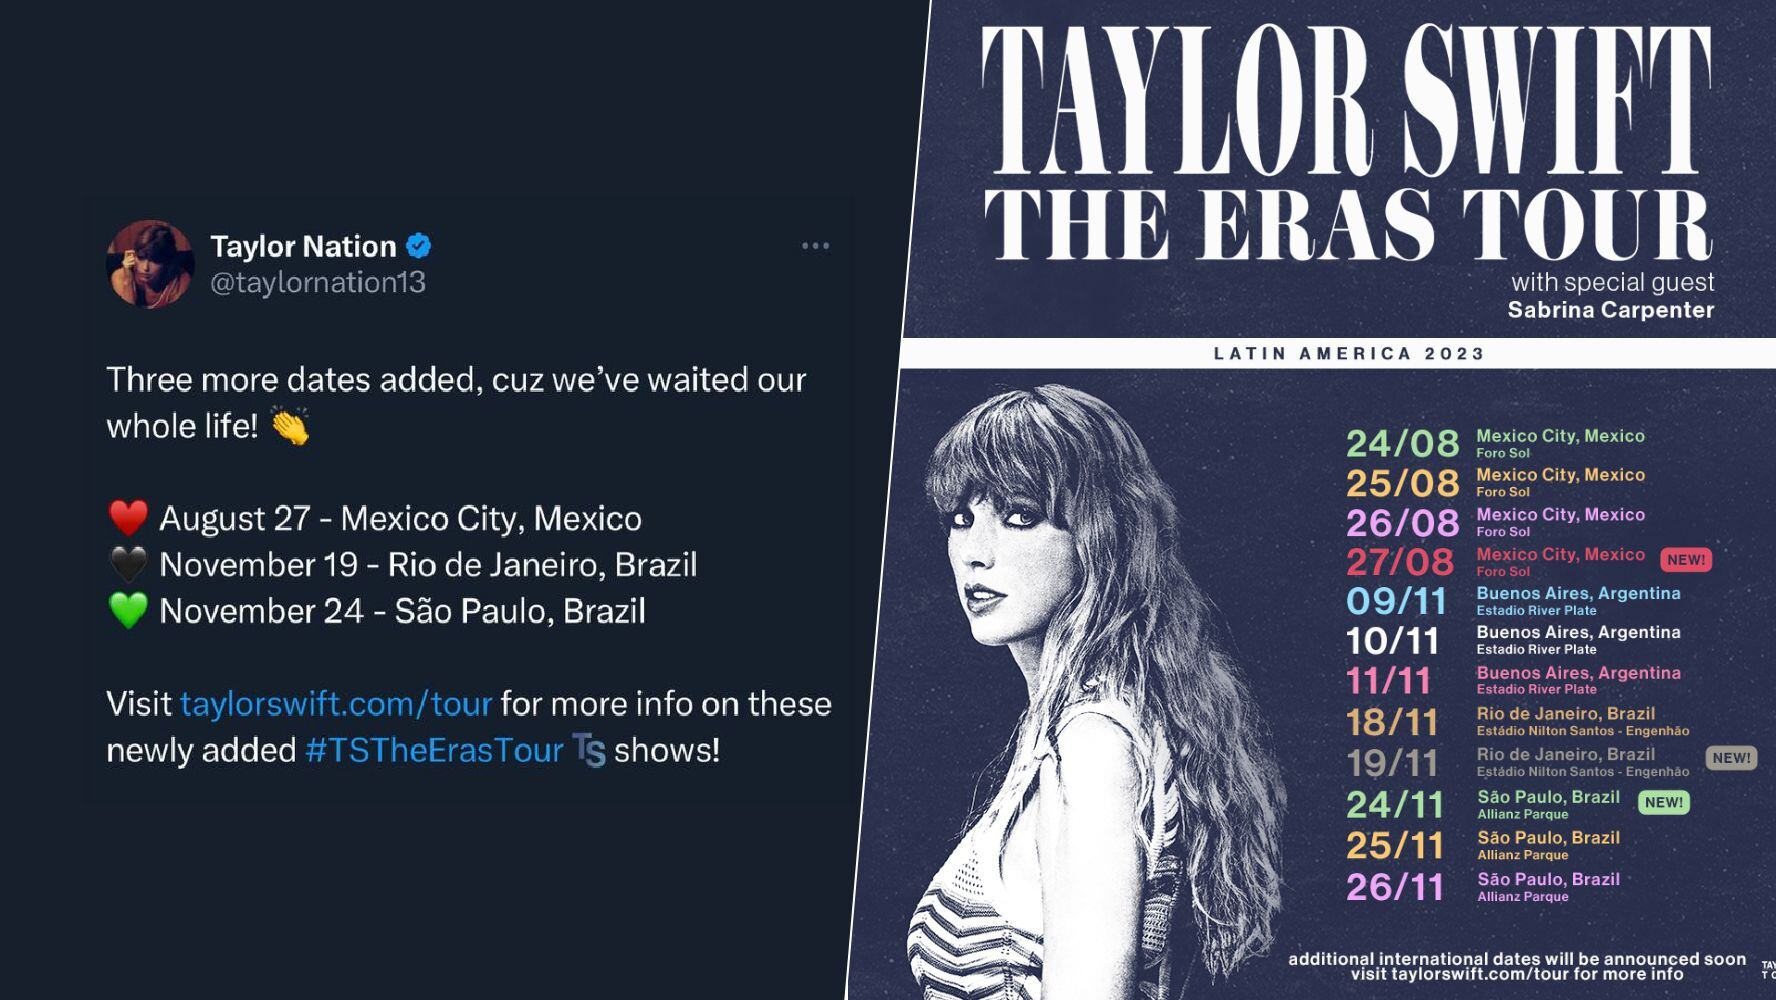 El Foro Sol de la CDMX tendrá otra presentación de Taylor Swift. (Foto: Twitter / @taylornation13)